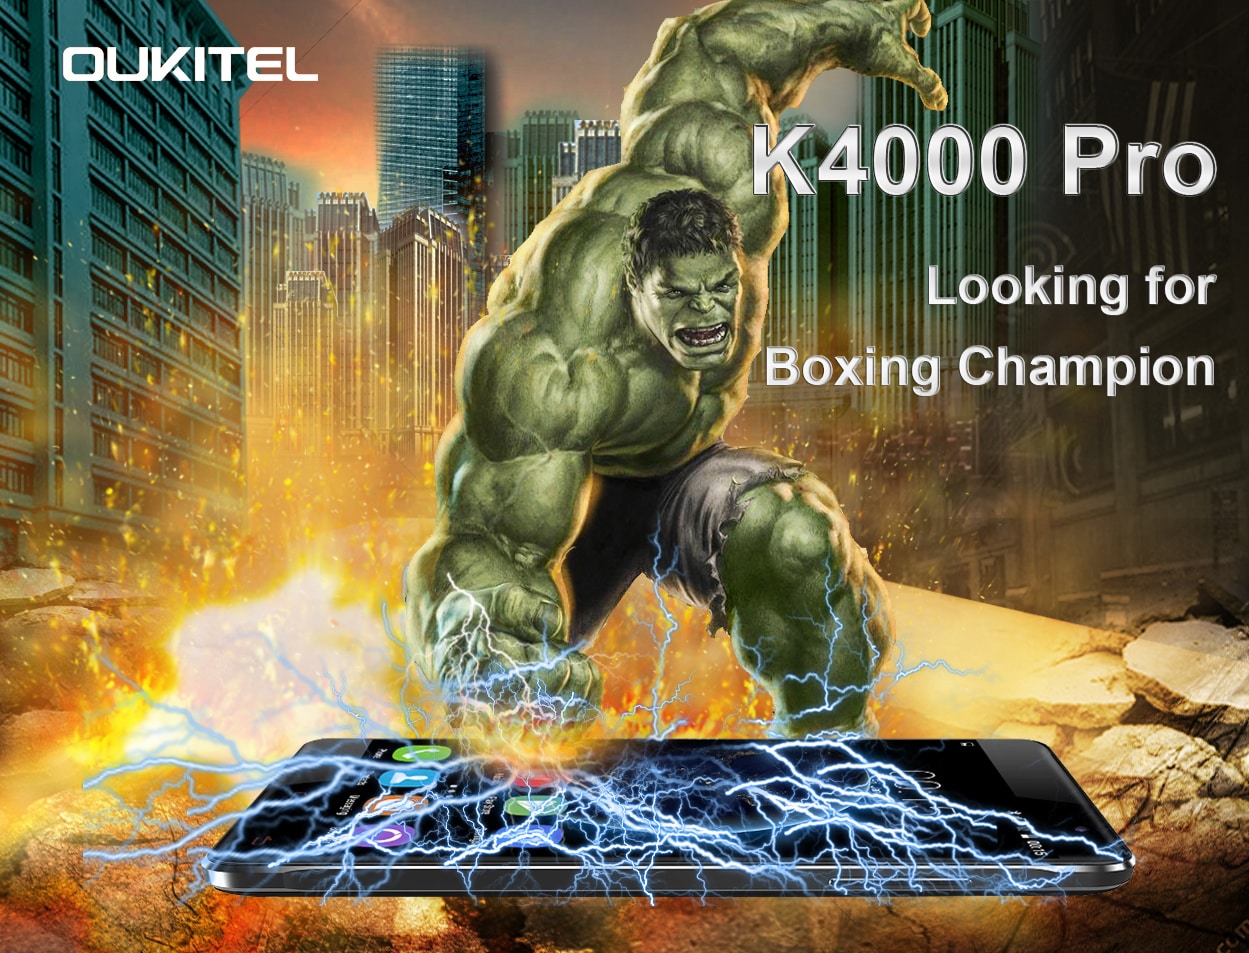 Anche Oukitel K4000 Pro vuole essere fatto a pezzi, o magari solo preso a pugni (video)